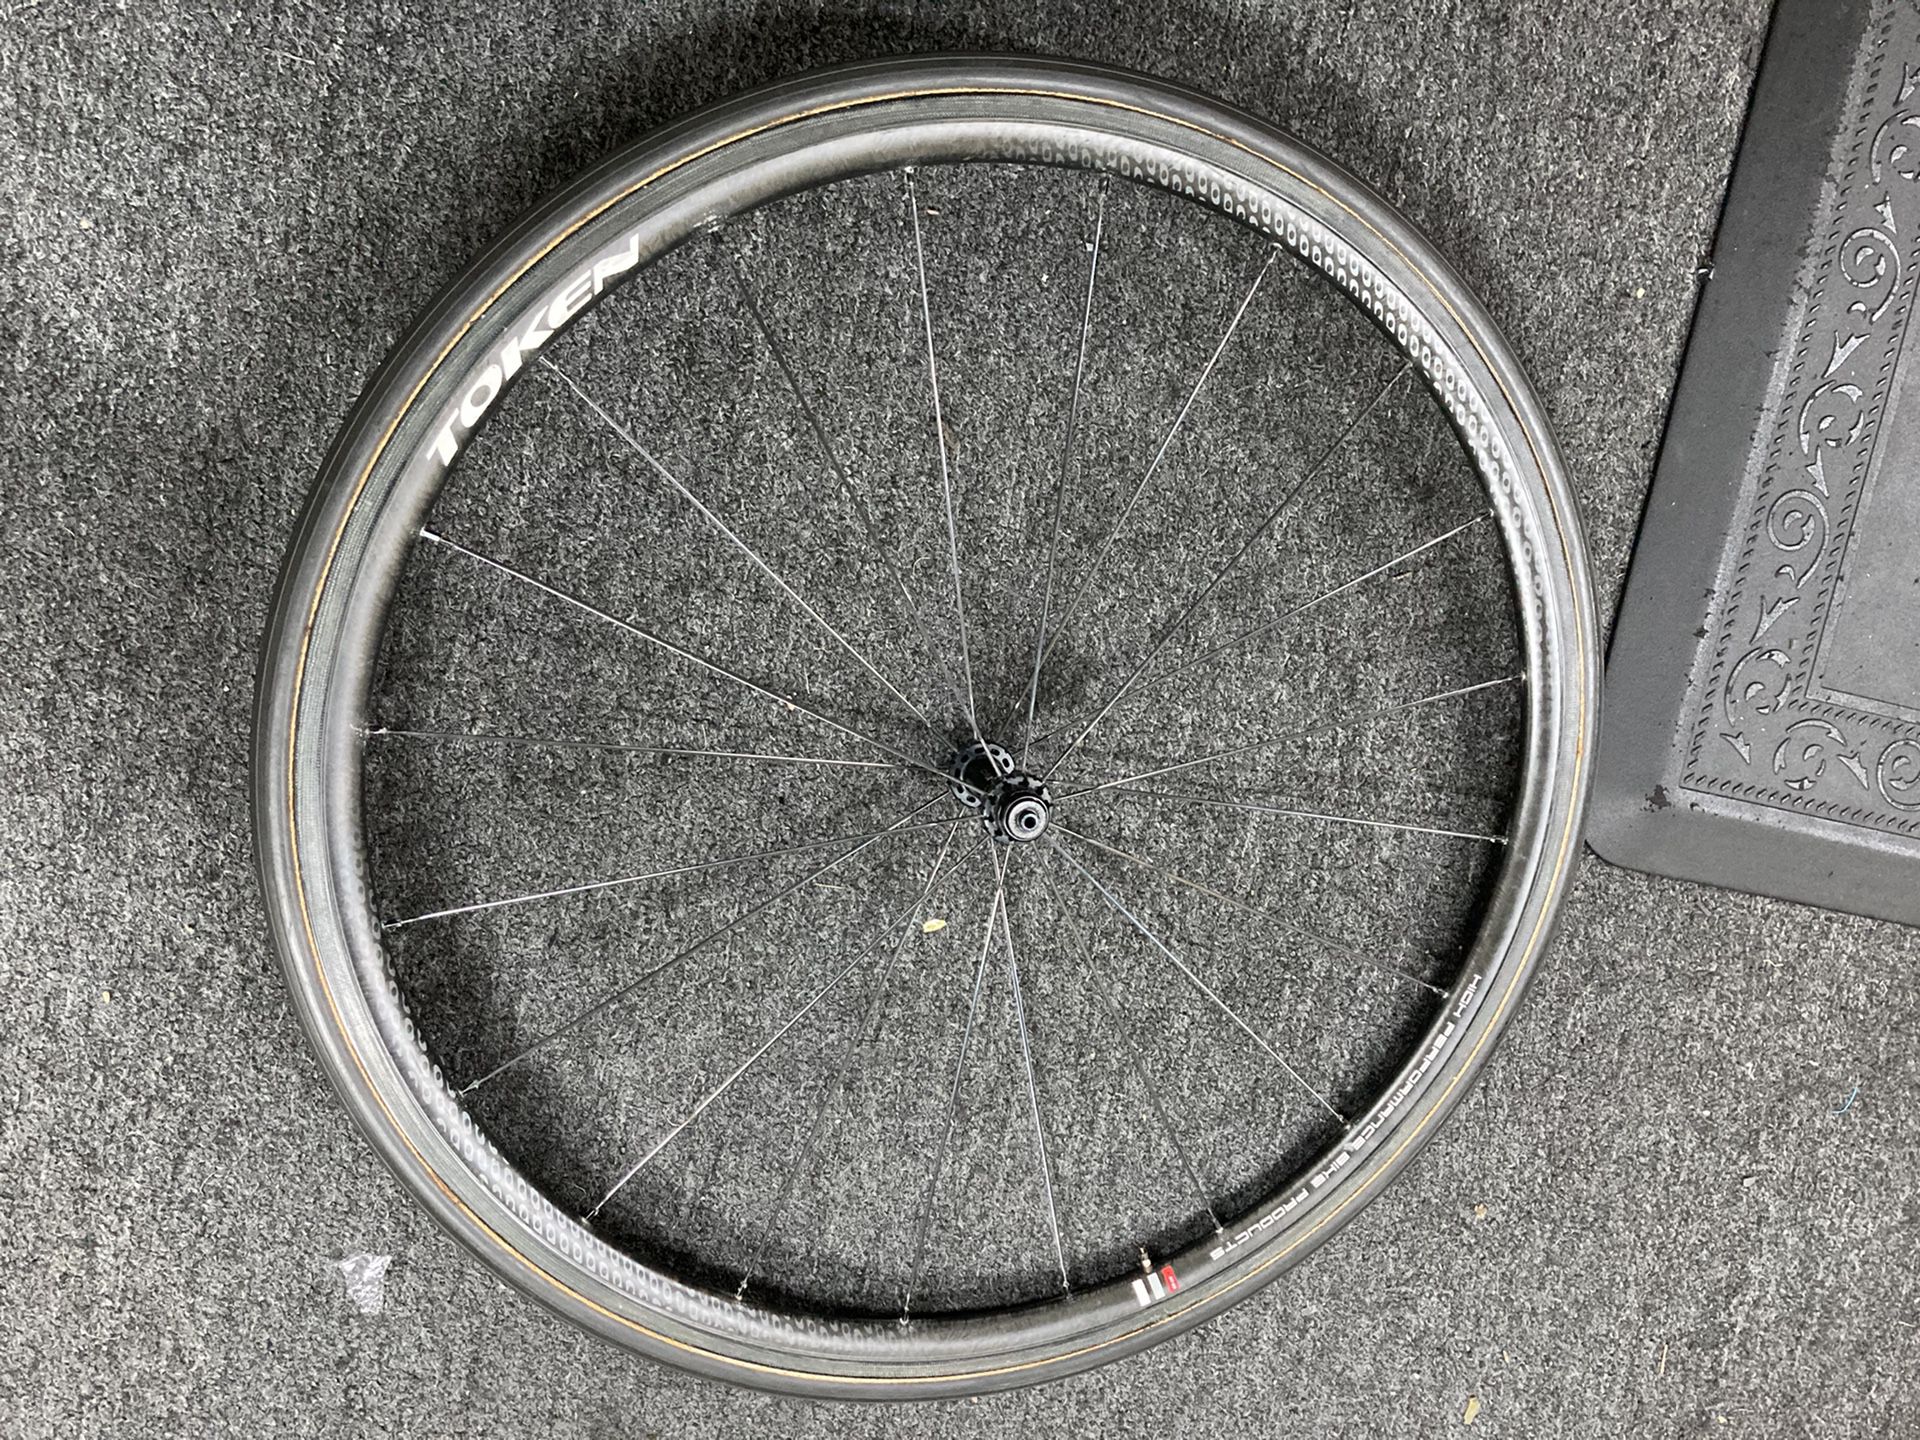 Carbon fiber front wheel for road bike